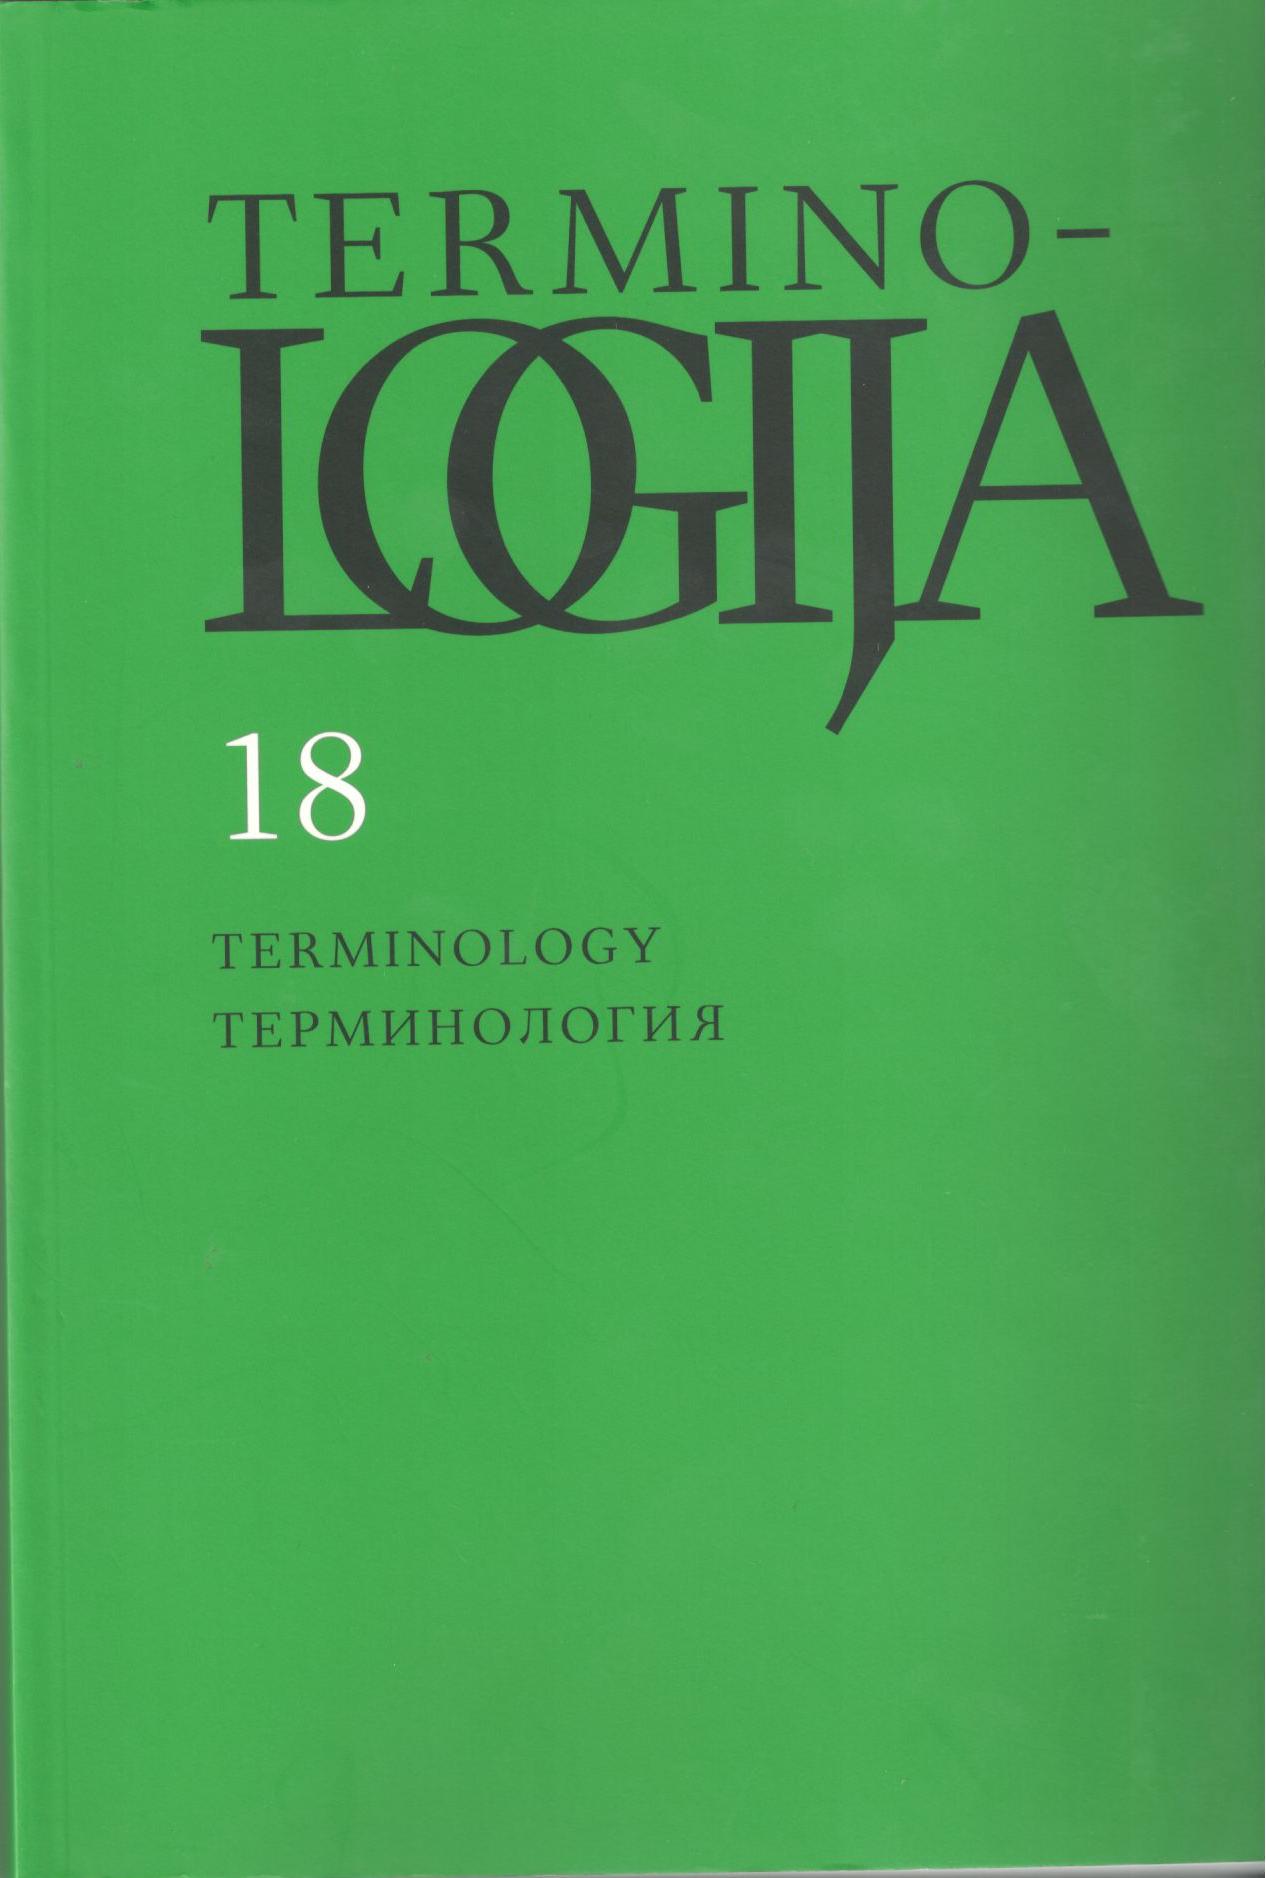 Terminologijos komisijos (1921–1926) veiklos apžvalga